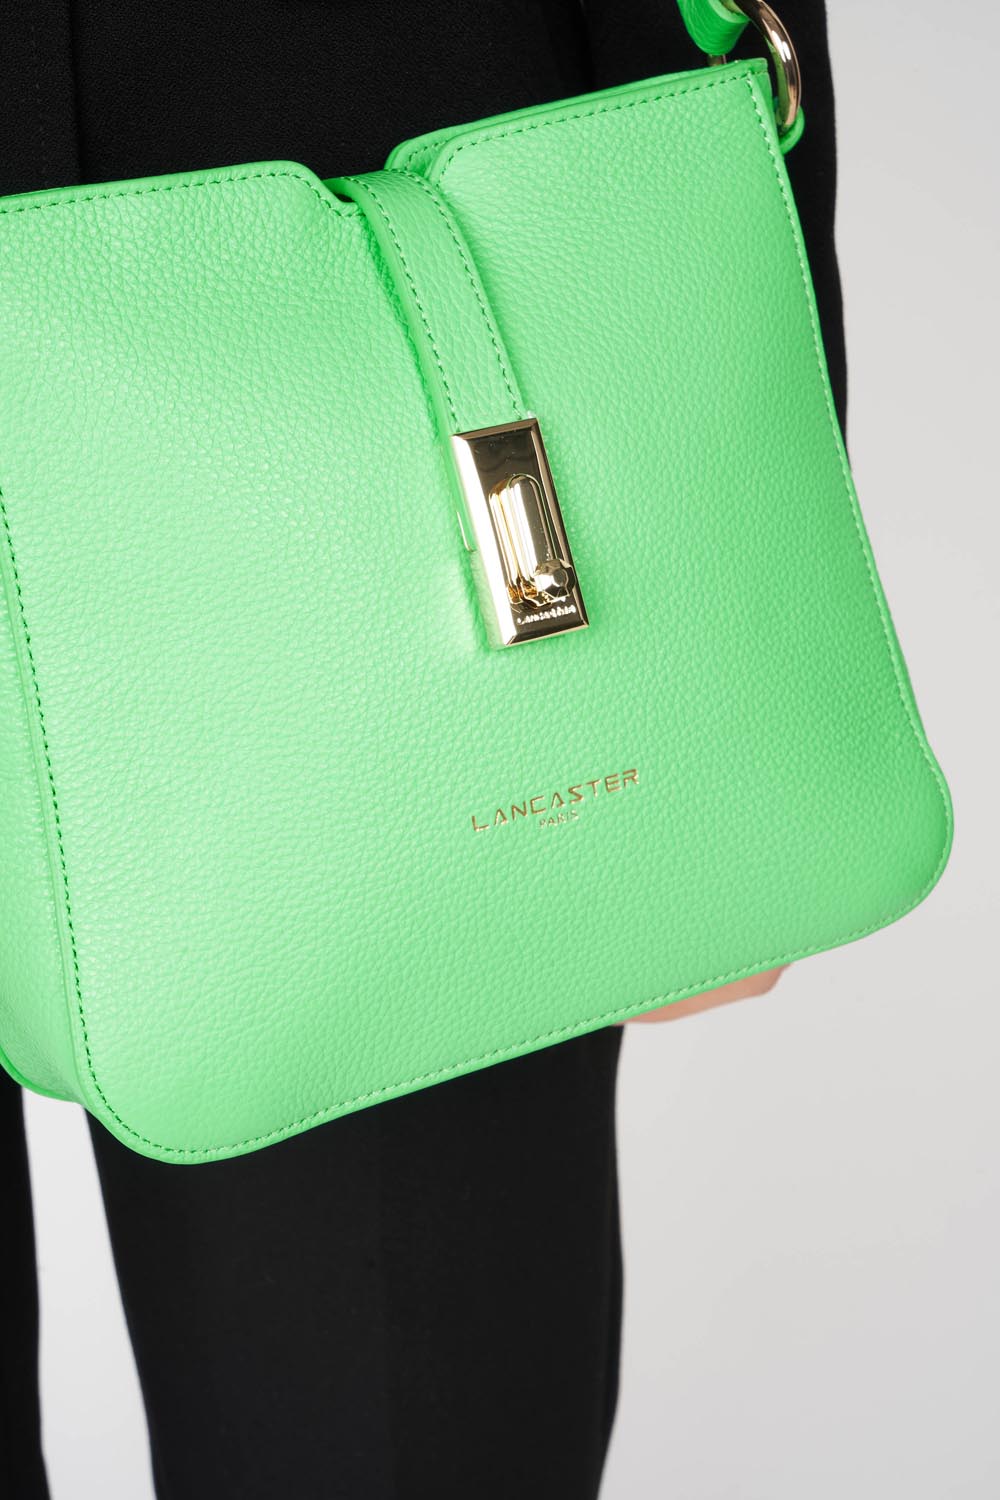 crossbody bag - foulonné milano #couleur_vert-colo